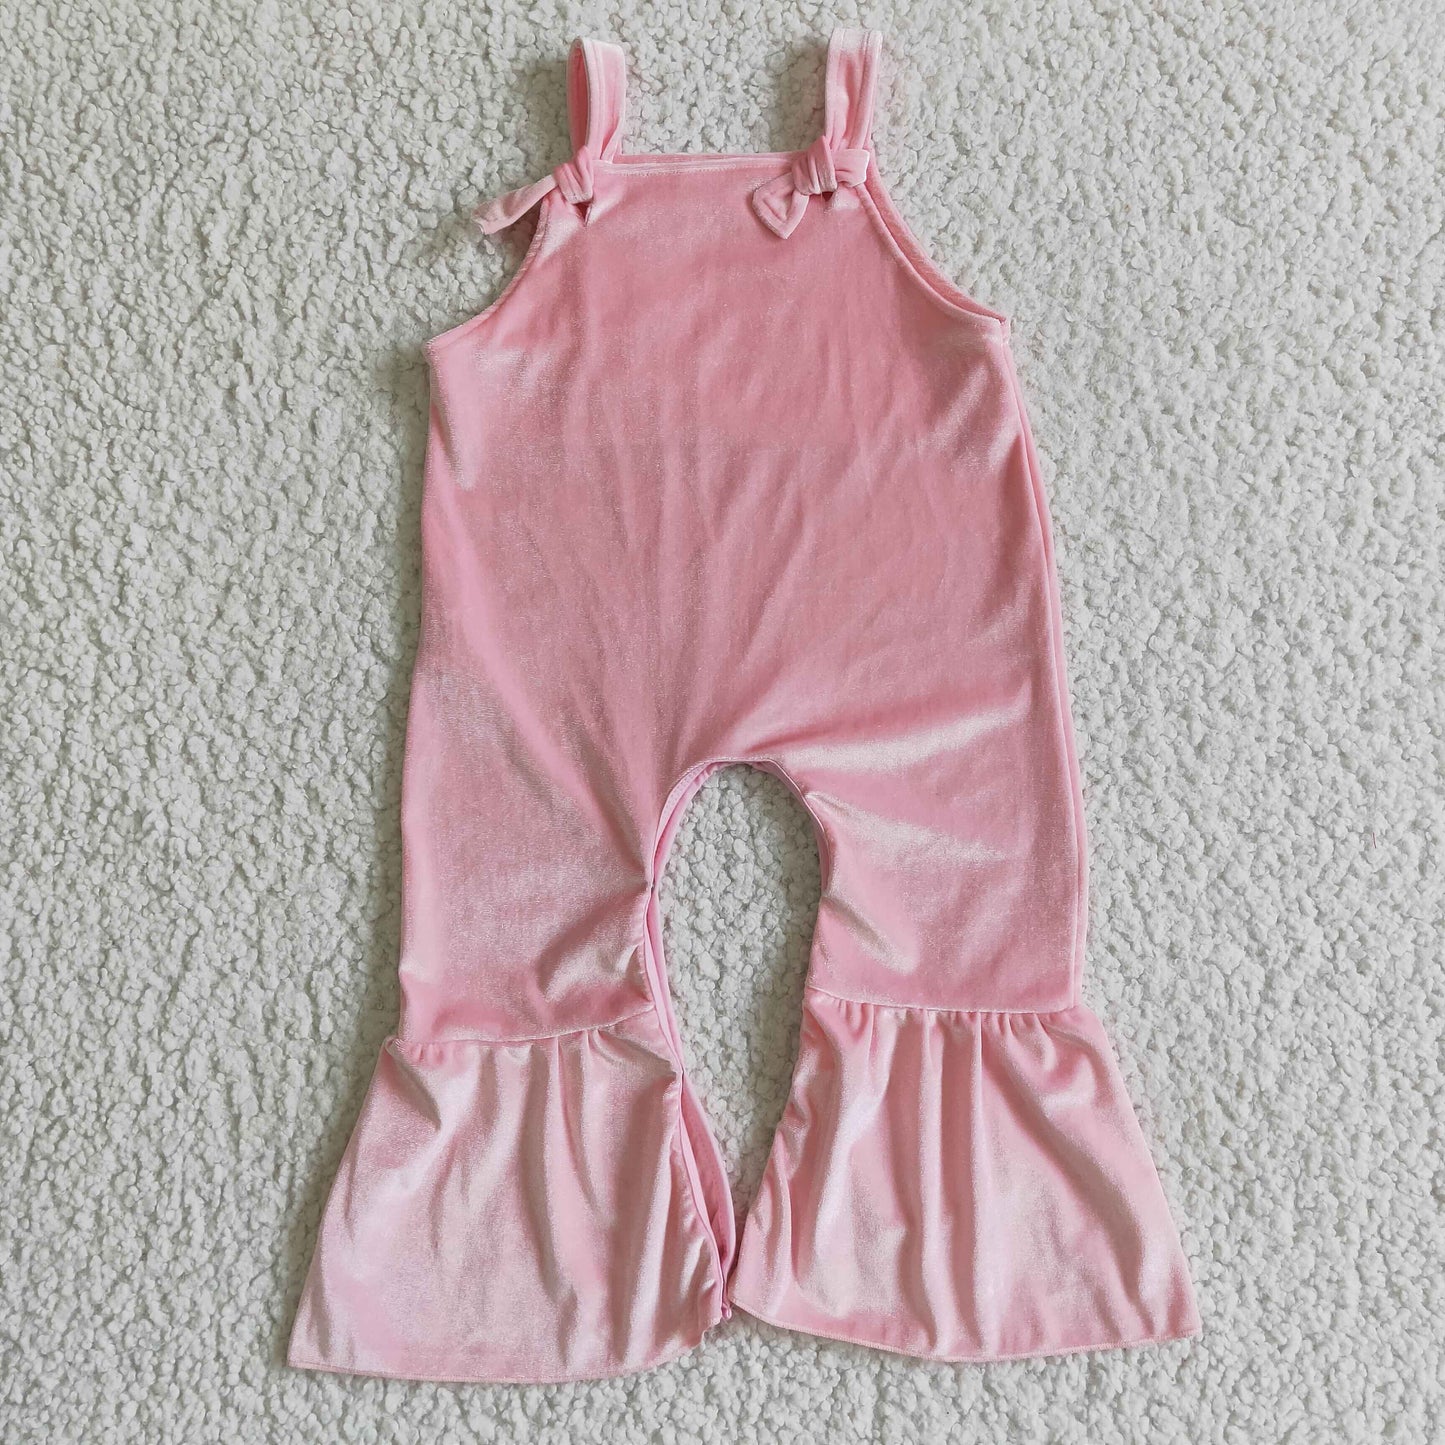 SR0088 girl pink velvet suspender romper